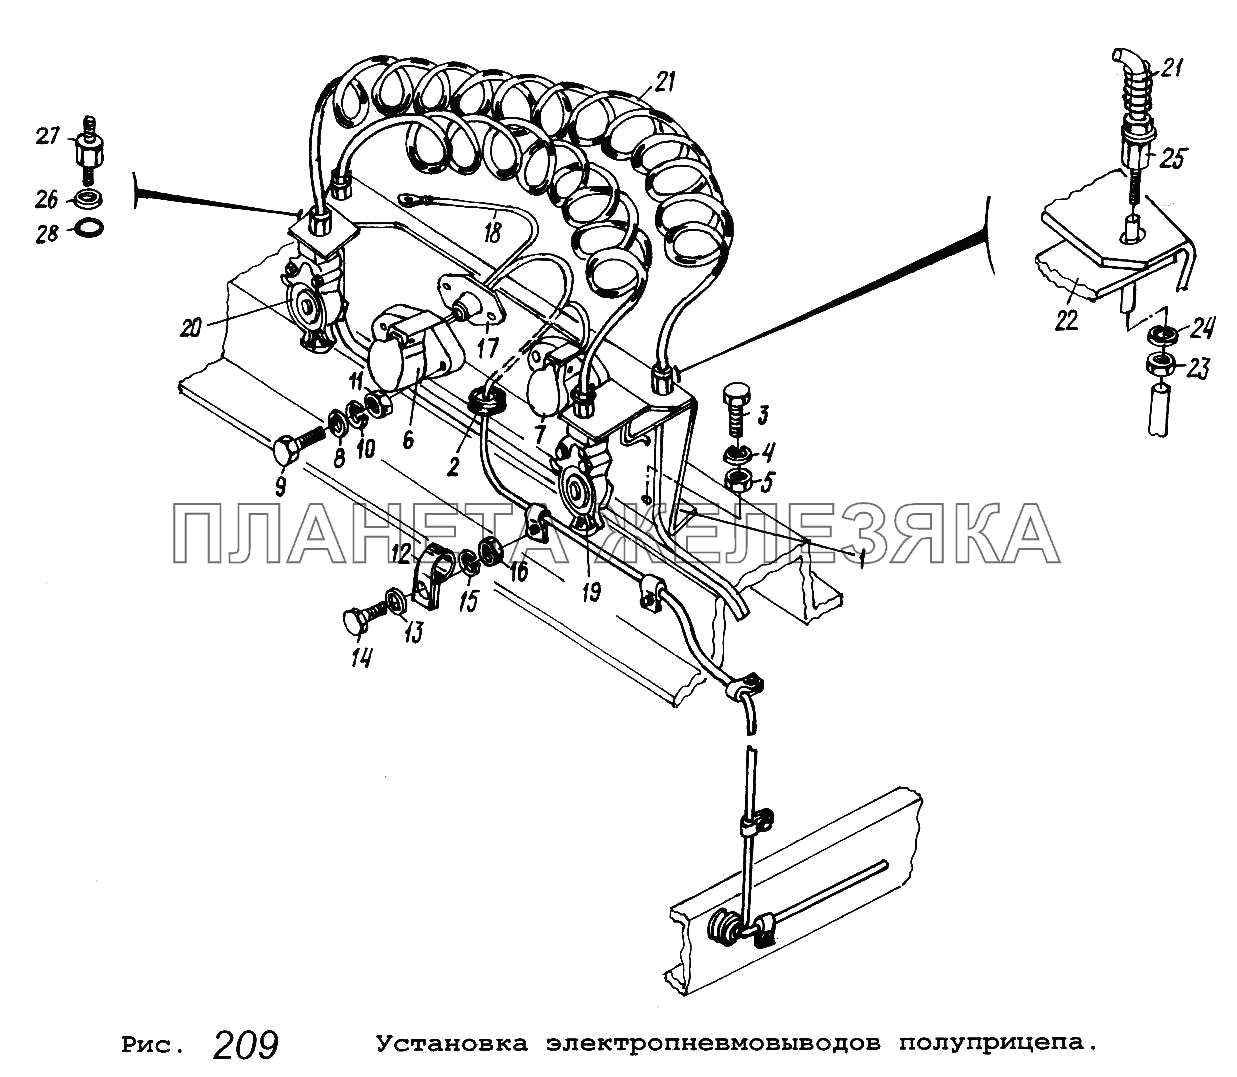 Установка электропневмовыводов полуприцепа МАЗ-5516